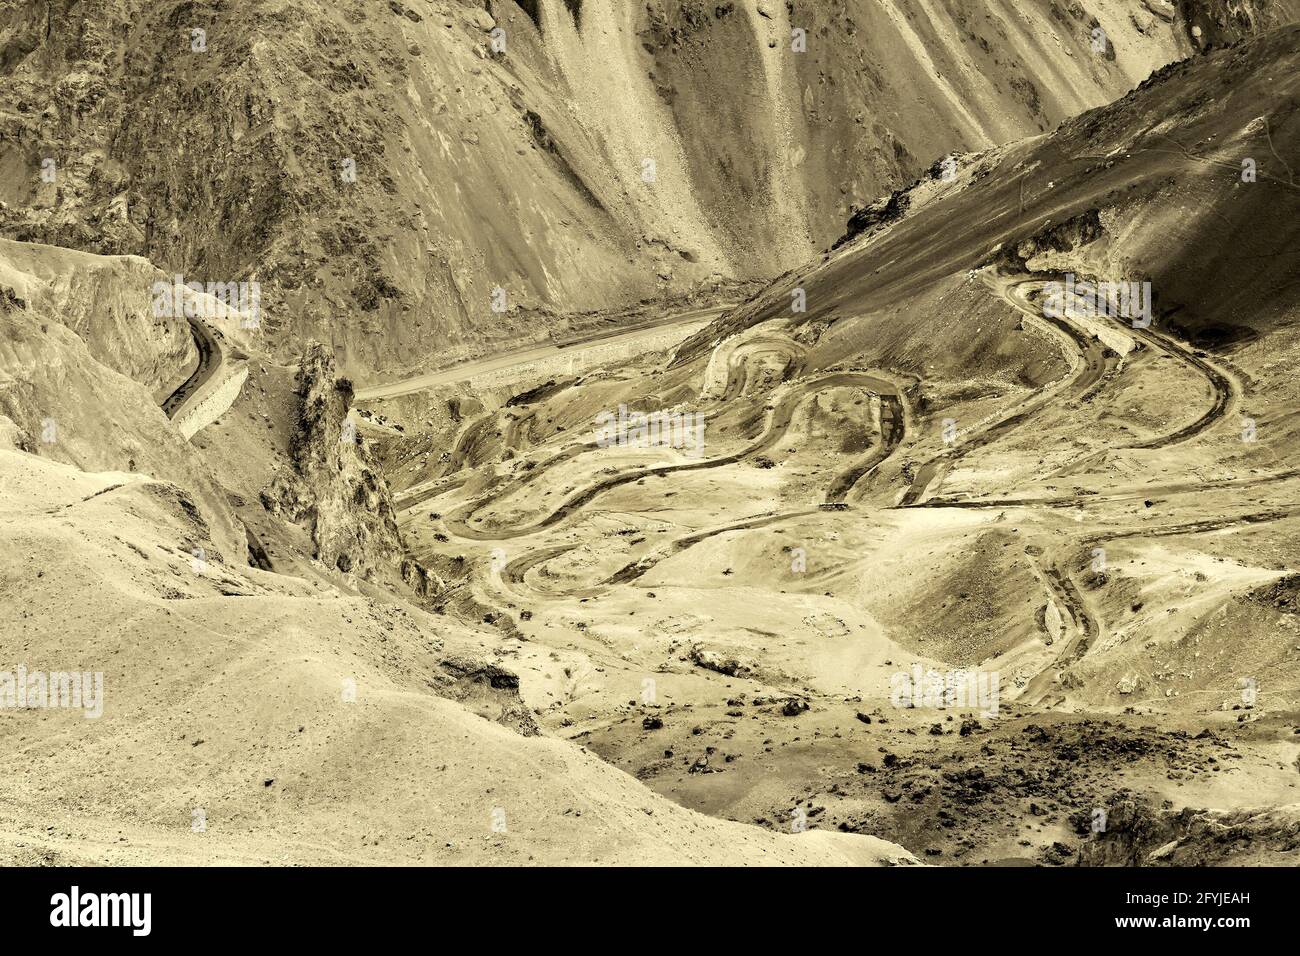 Veduta aerea della strada di zigzag - conosciuta come strada di jilabi al vecchio percorso di Leh Srinagar Highway, Ladakh, Jammu e Kashmir, India. Immagine seppia colorata. Foto Stock